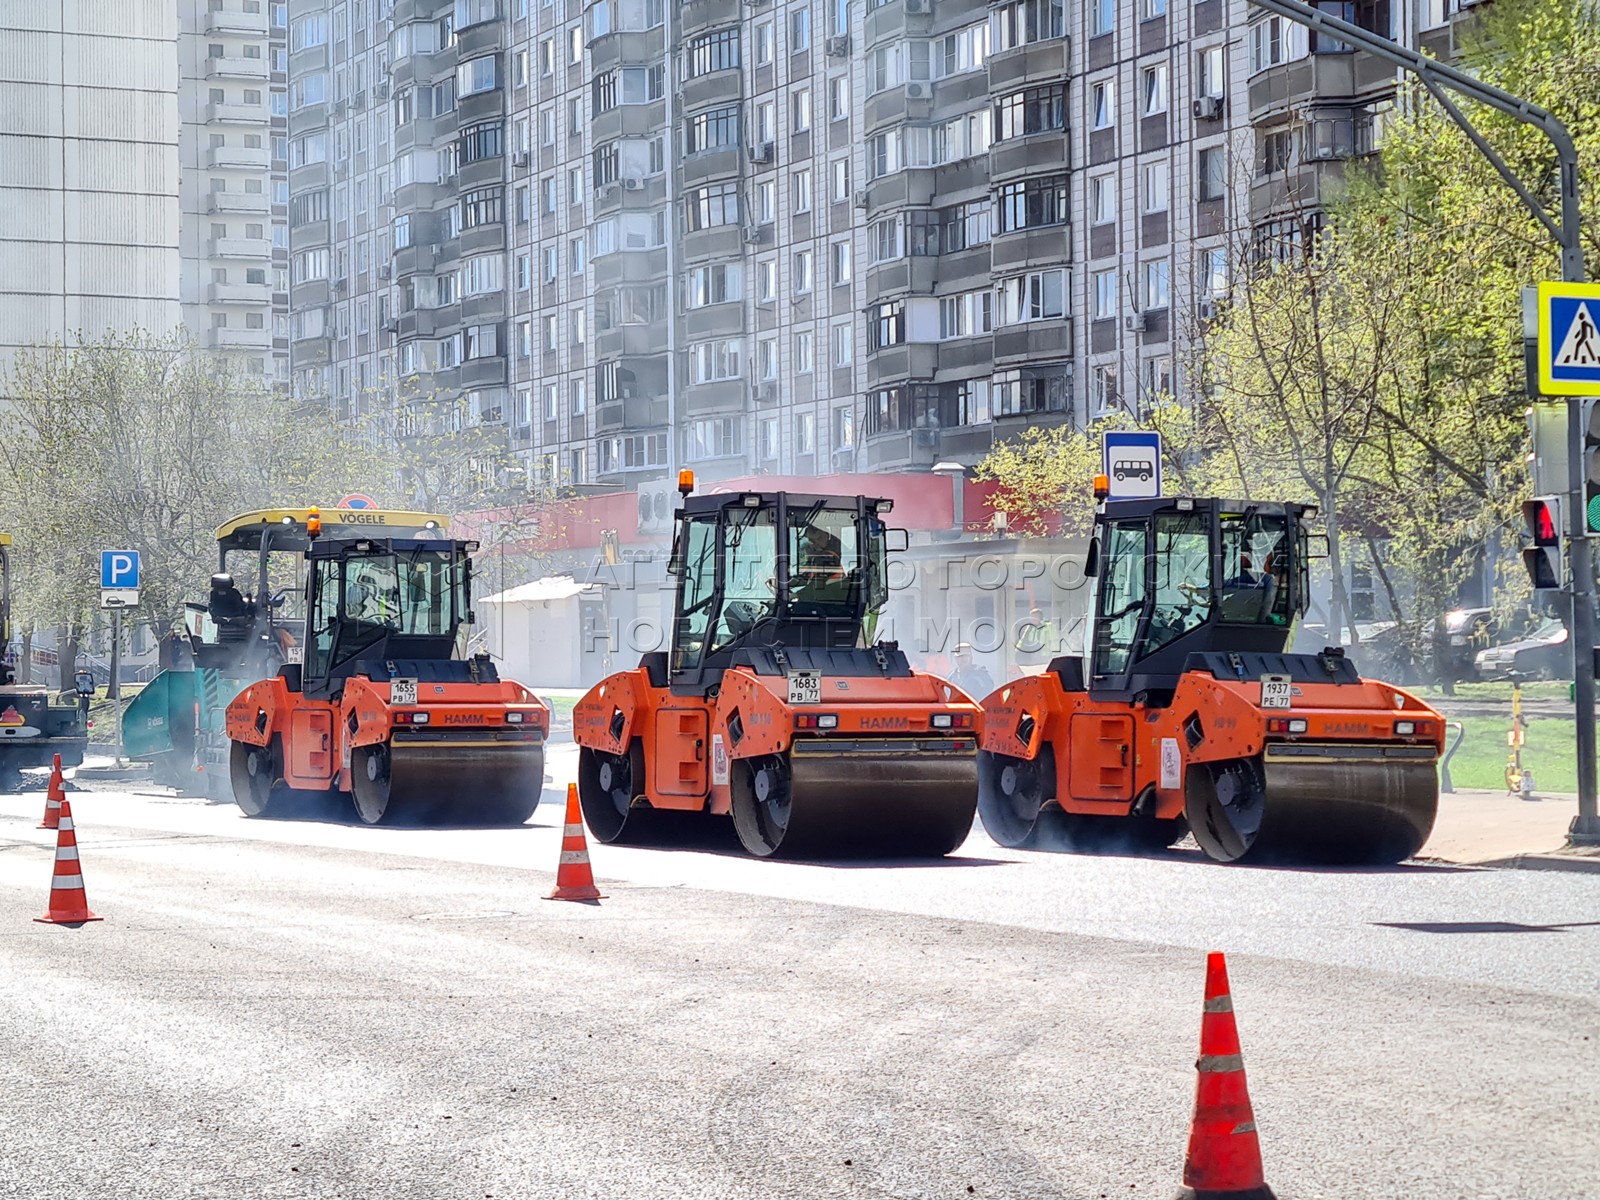 Городские вакансии в москве